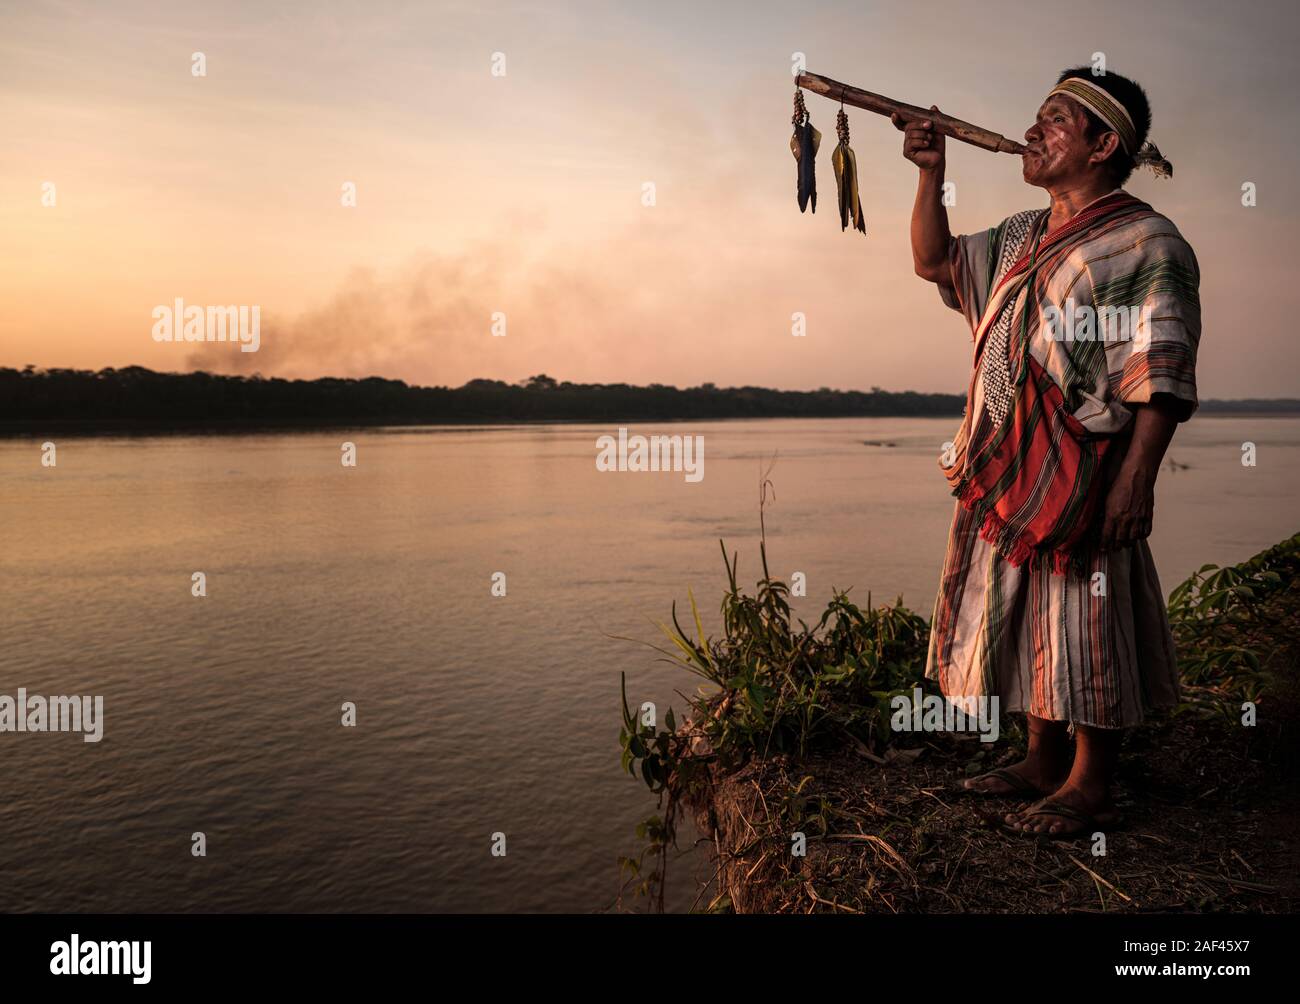 PUERTO MALDONADO, PERÚ - CIRCA SEPTIEMBRE 2019: Retrato de un chamán de la tribu Machiguenga en la Amazonía Peruana. Foto de stock